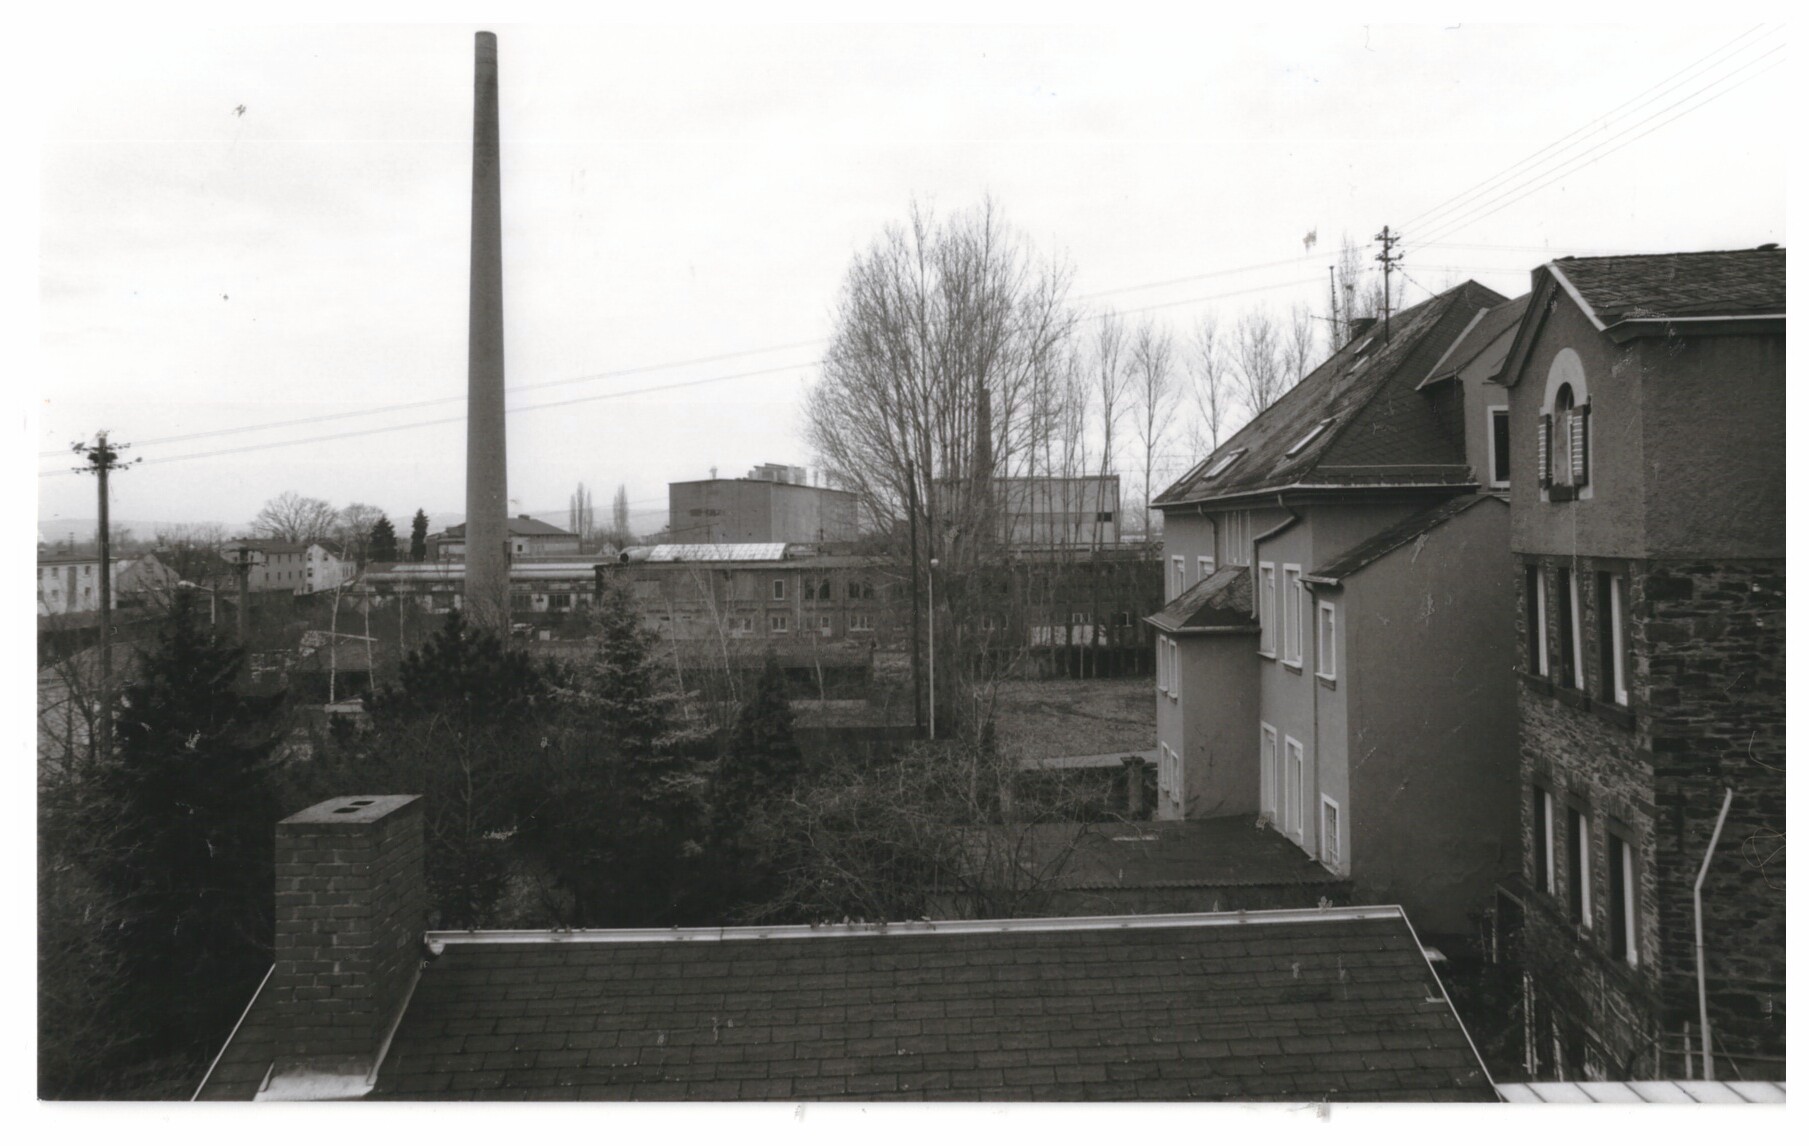 Werksgelände Didier vor dem Abriss 1998/99, Bendorf (Stiftung Sayner Hütte, Rheinisches Eisenkunstguss-Museum CC BY-NC-SA)